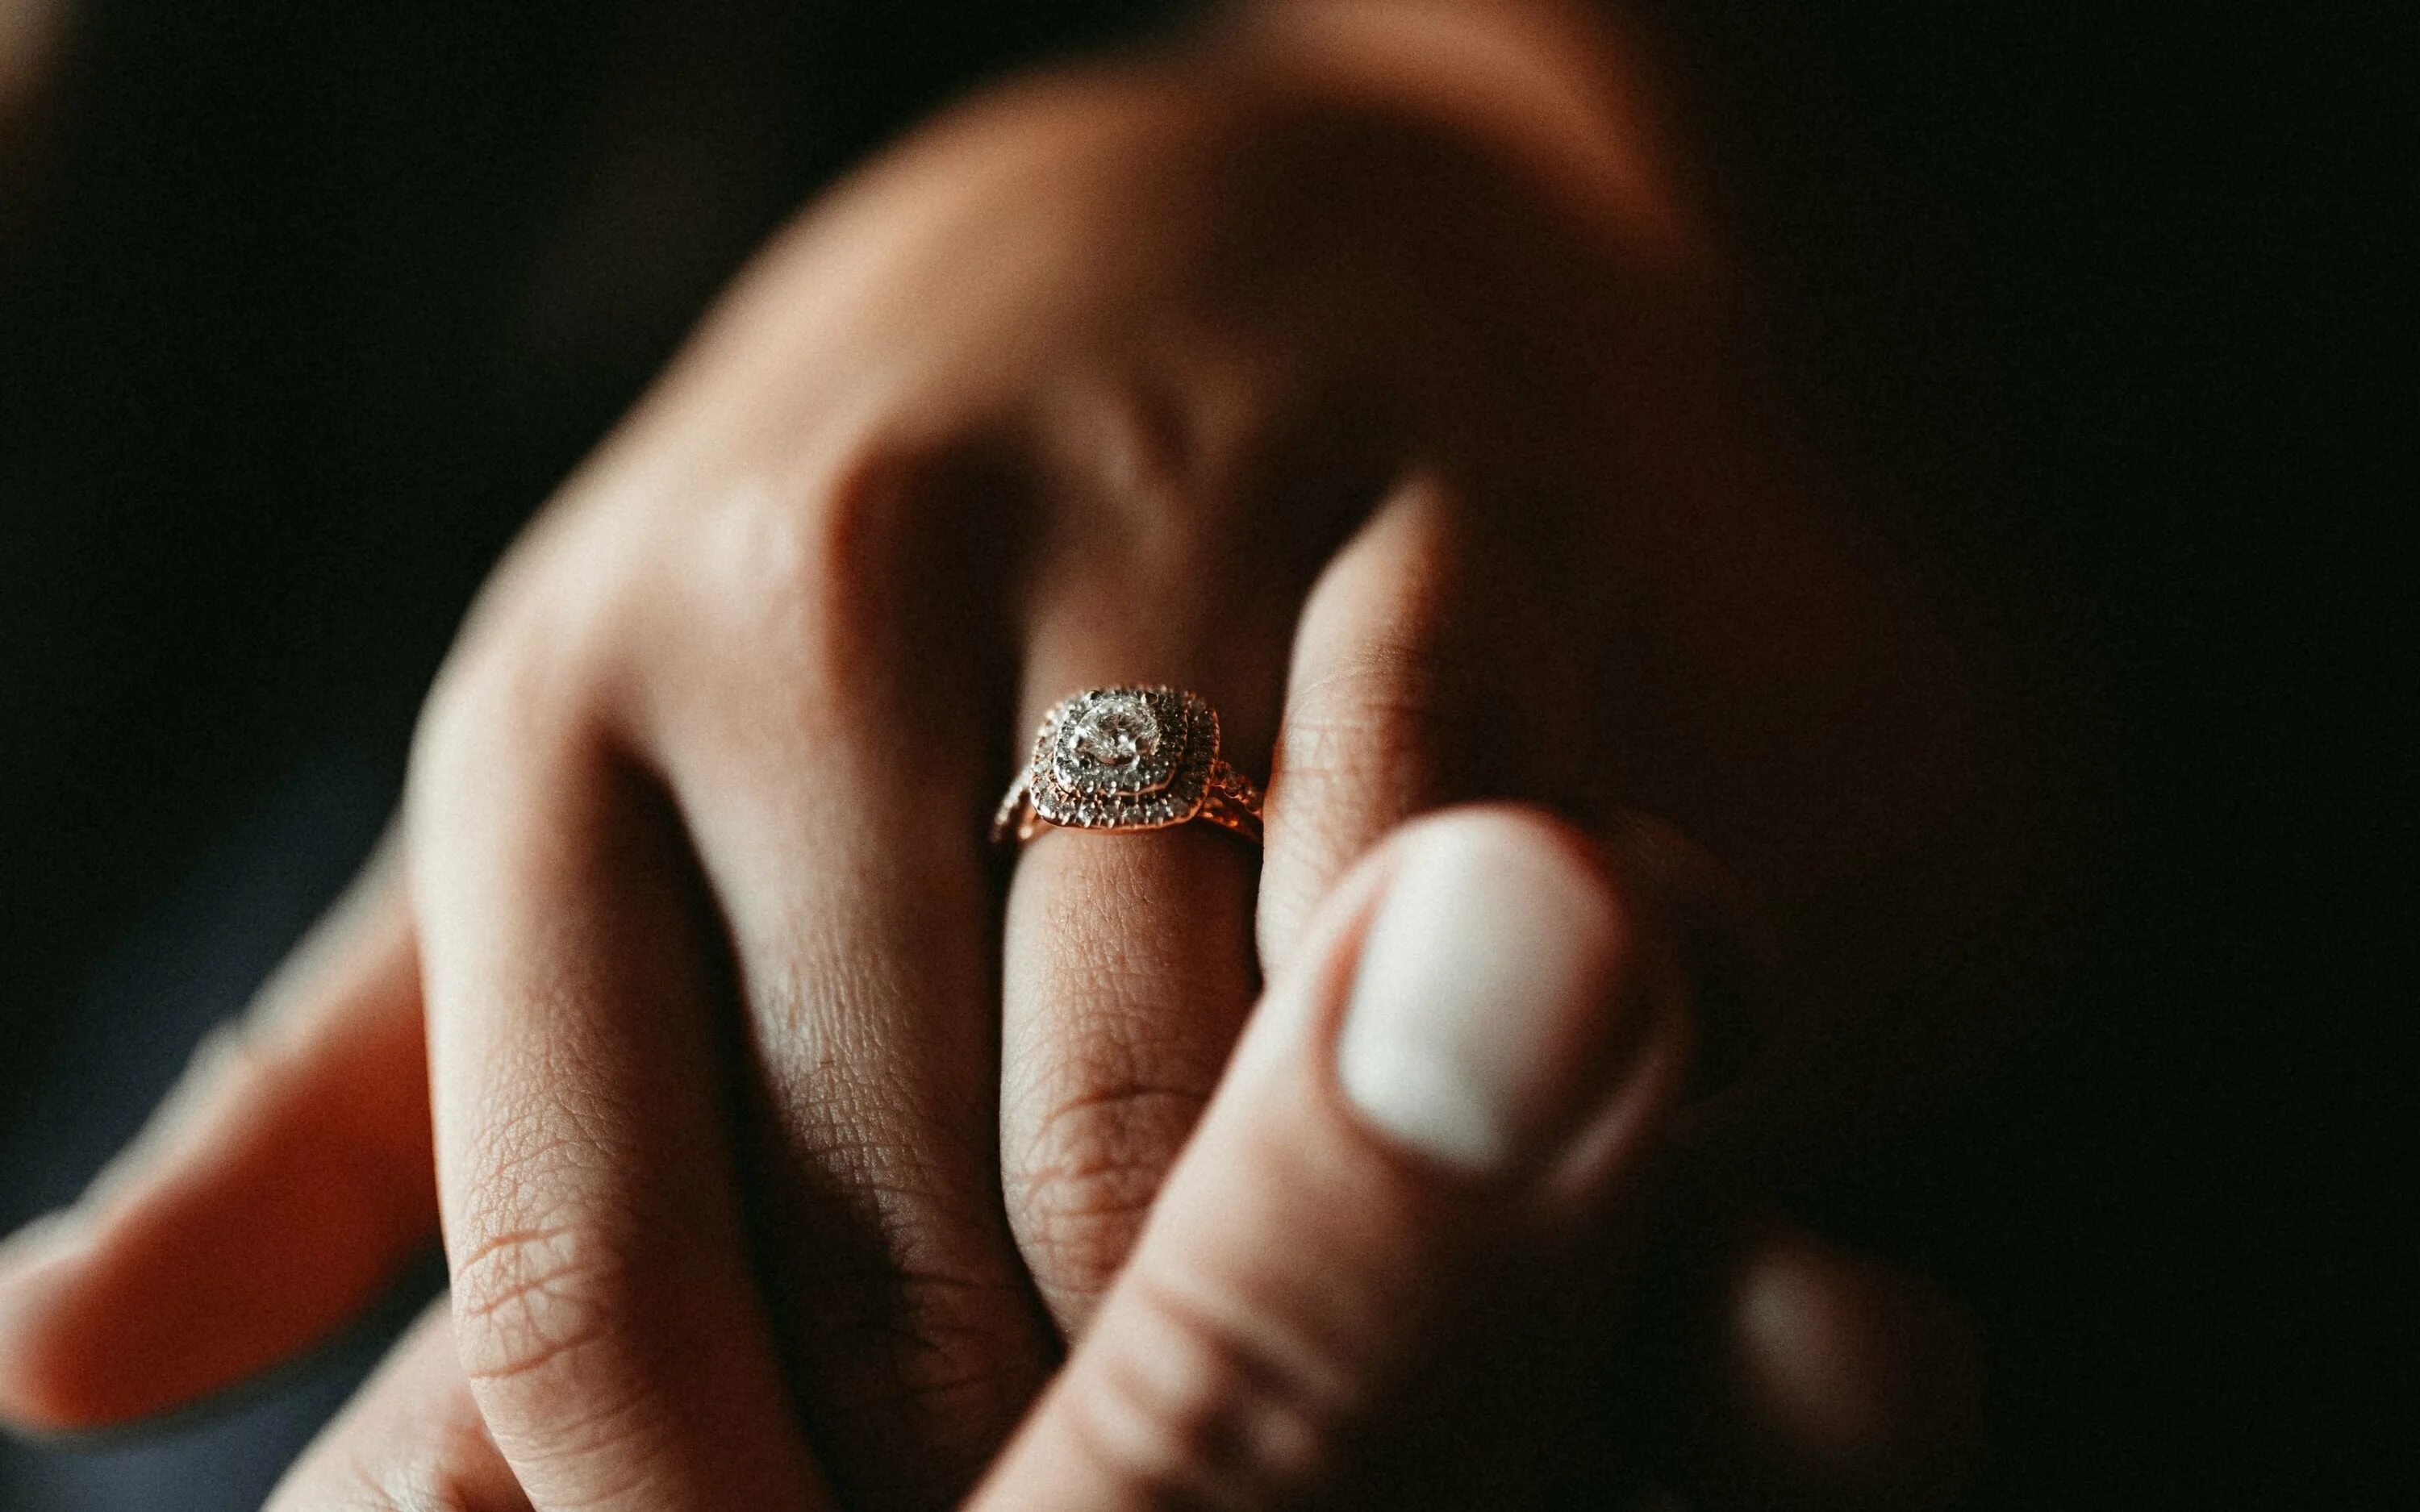 Кольцо на руке. Обручальные кольца на руках. Перстень на руке. Обручальное кольцо на пальце. Сон одели кольцо золотое кольцо